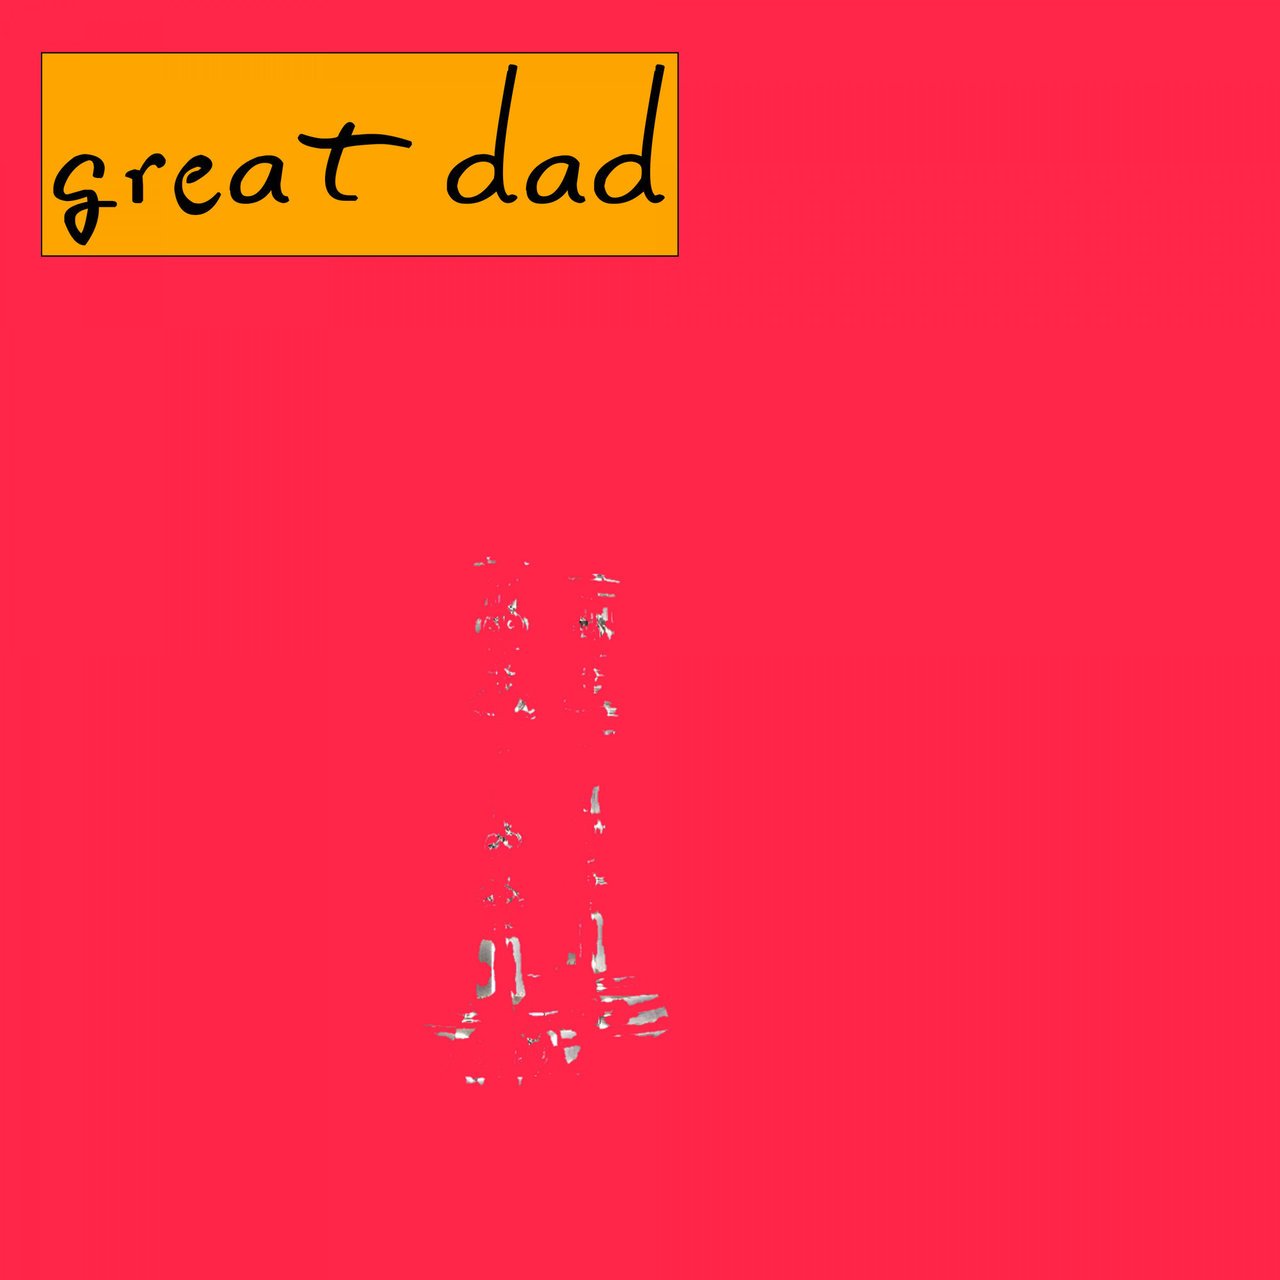 Песня hell s great dad на русском